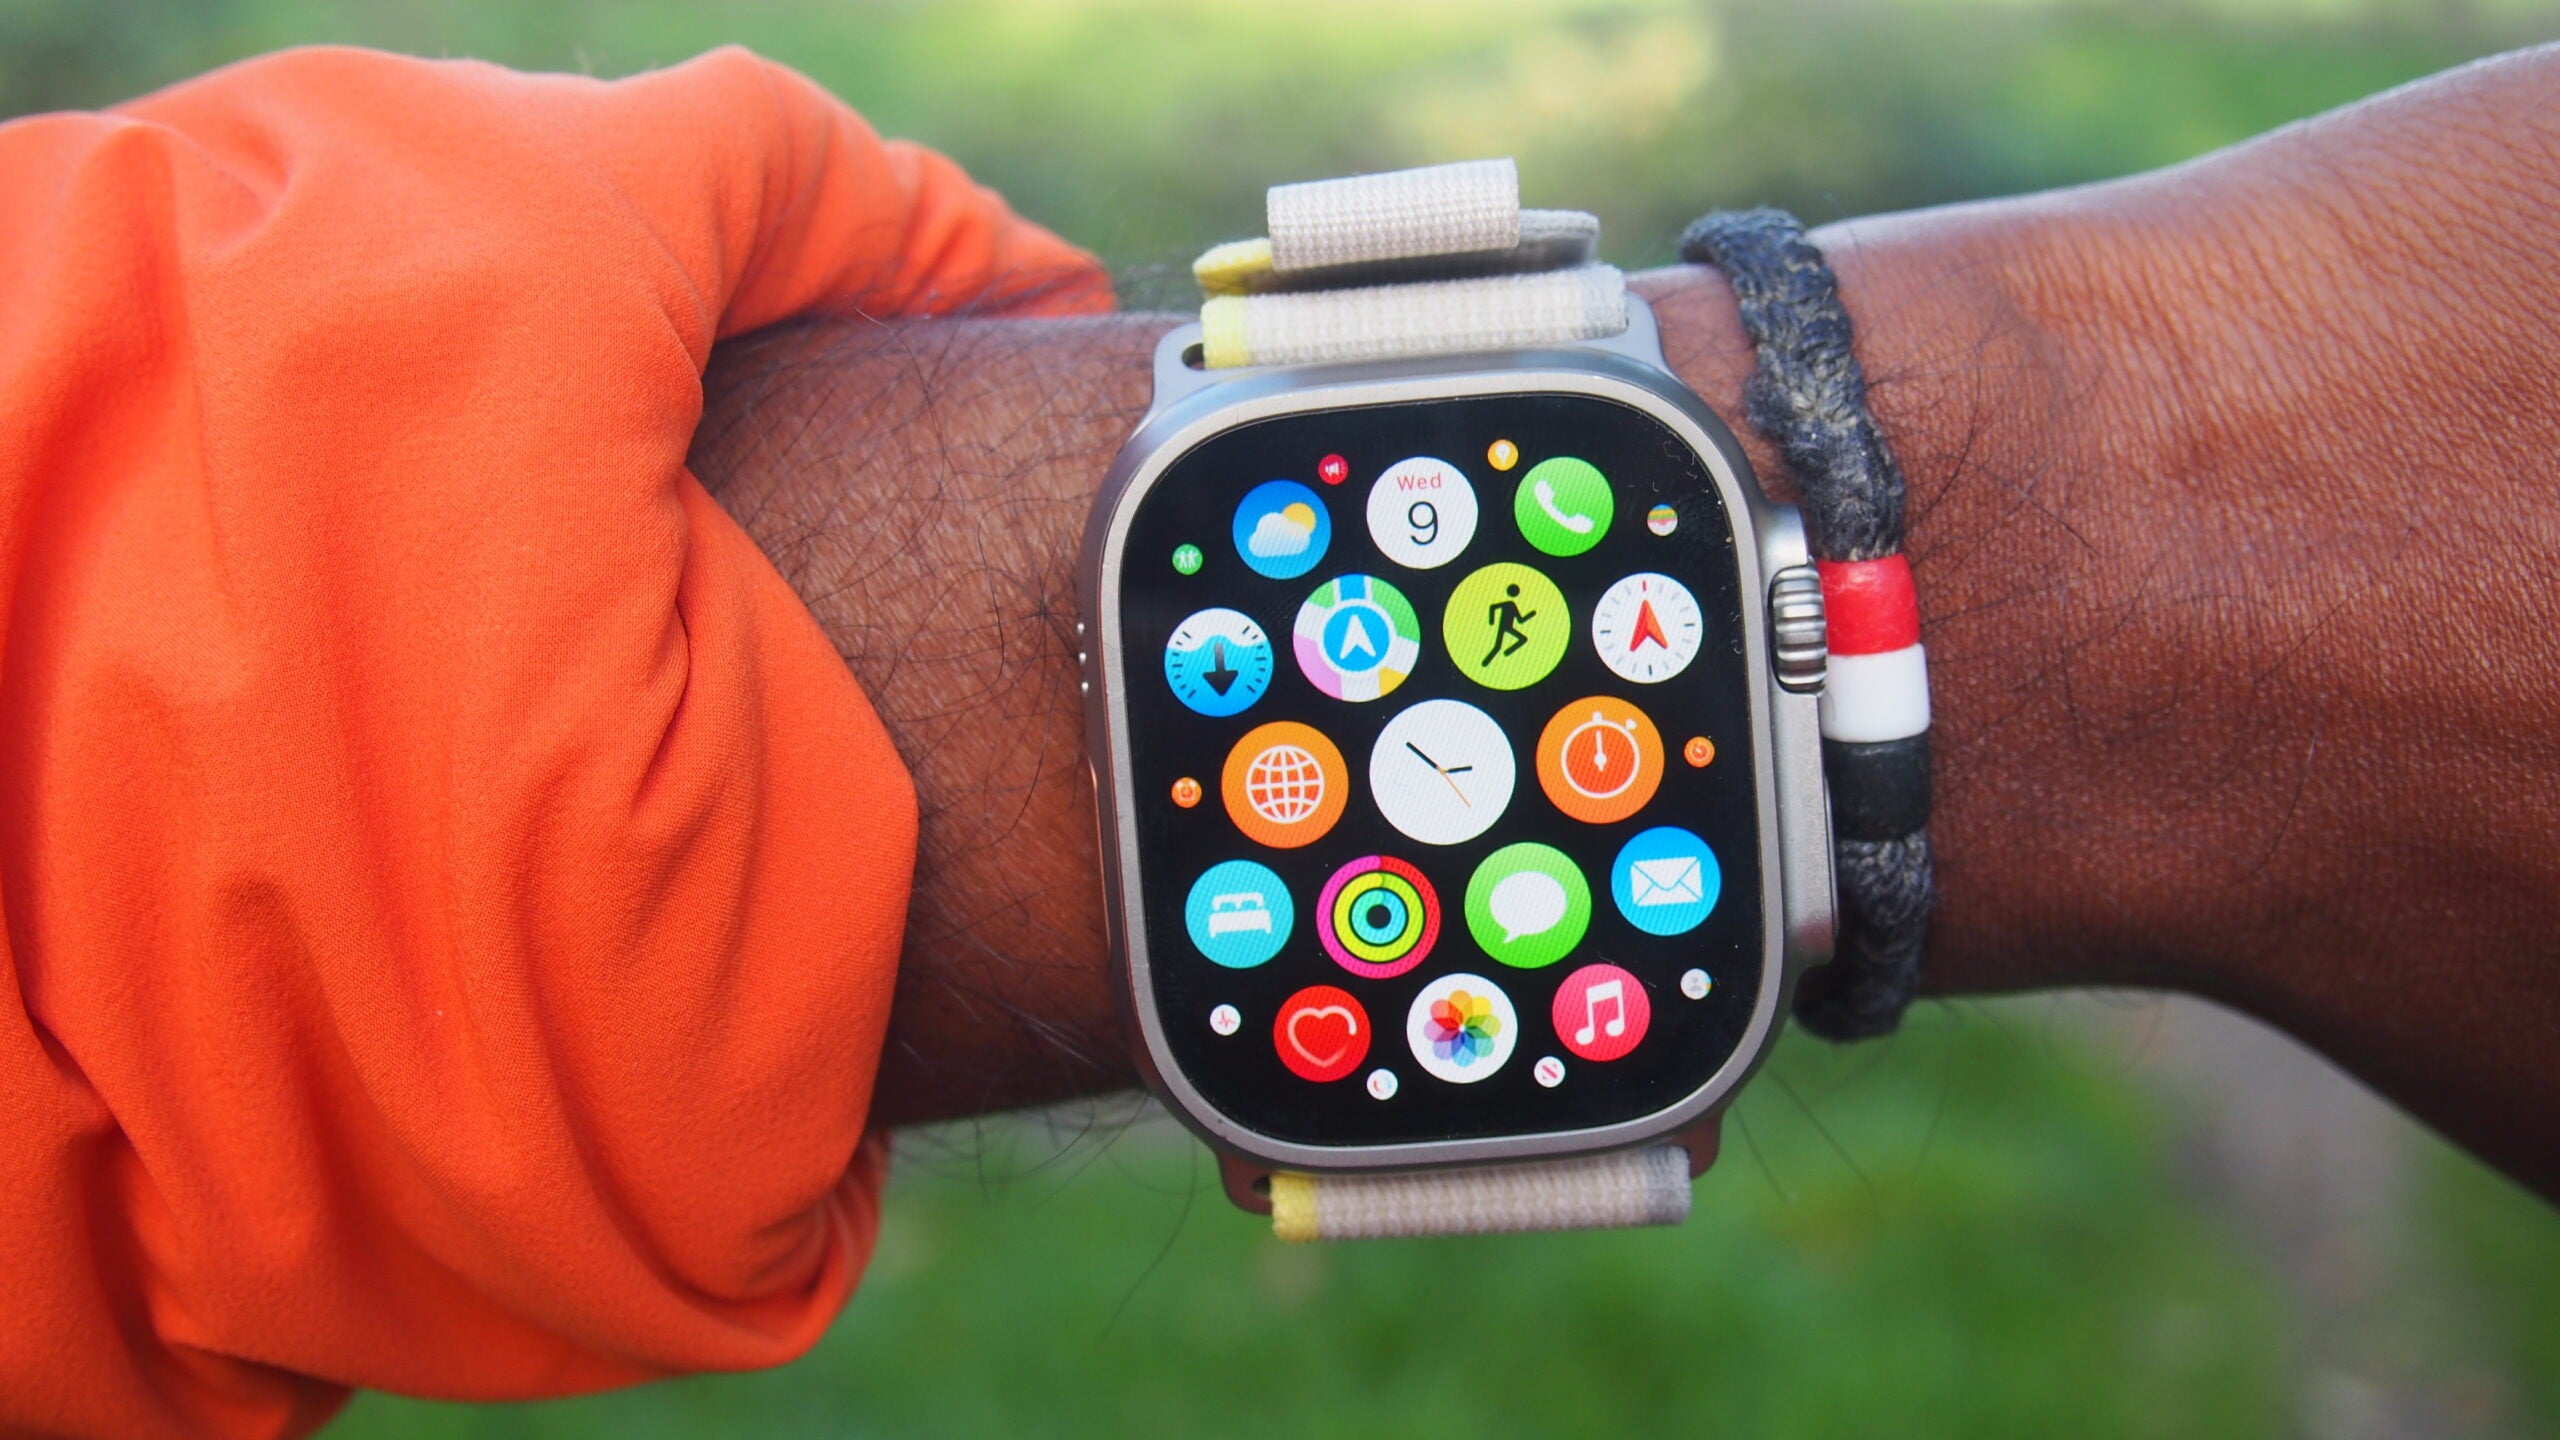 4. Bí quyết để giữ Apple Watch luôn hoạt động ổn định